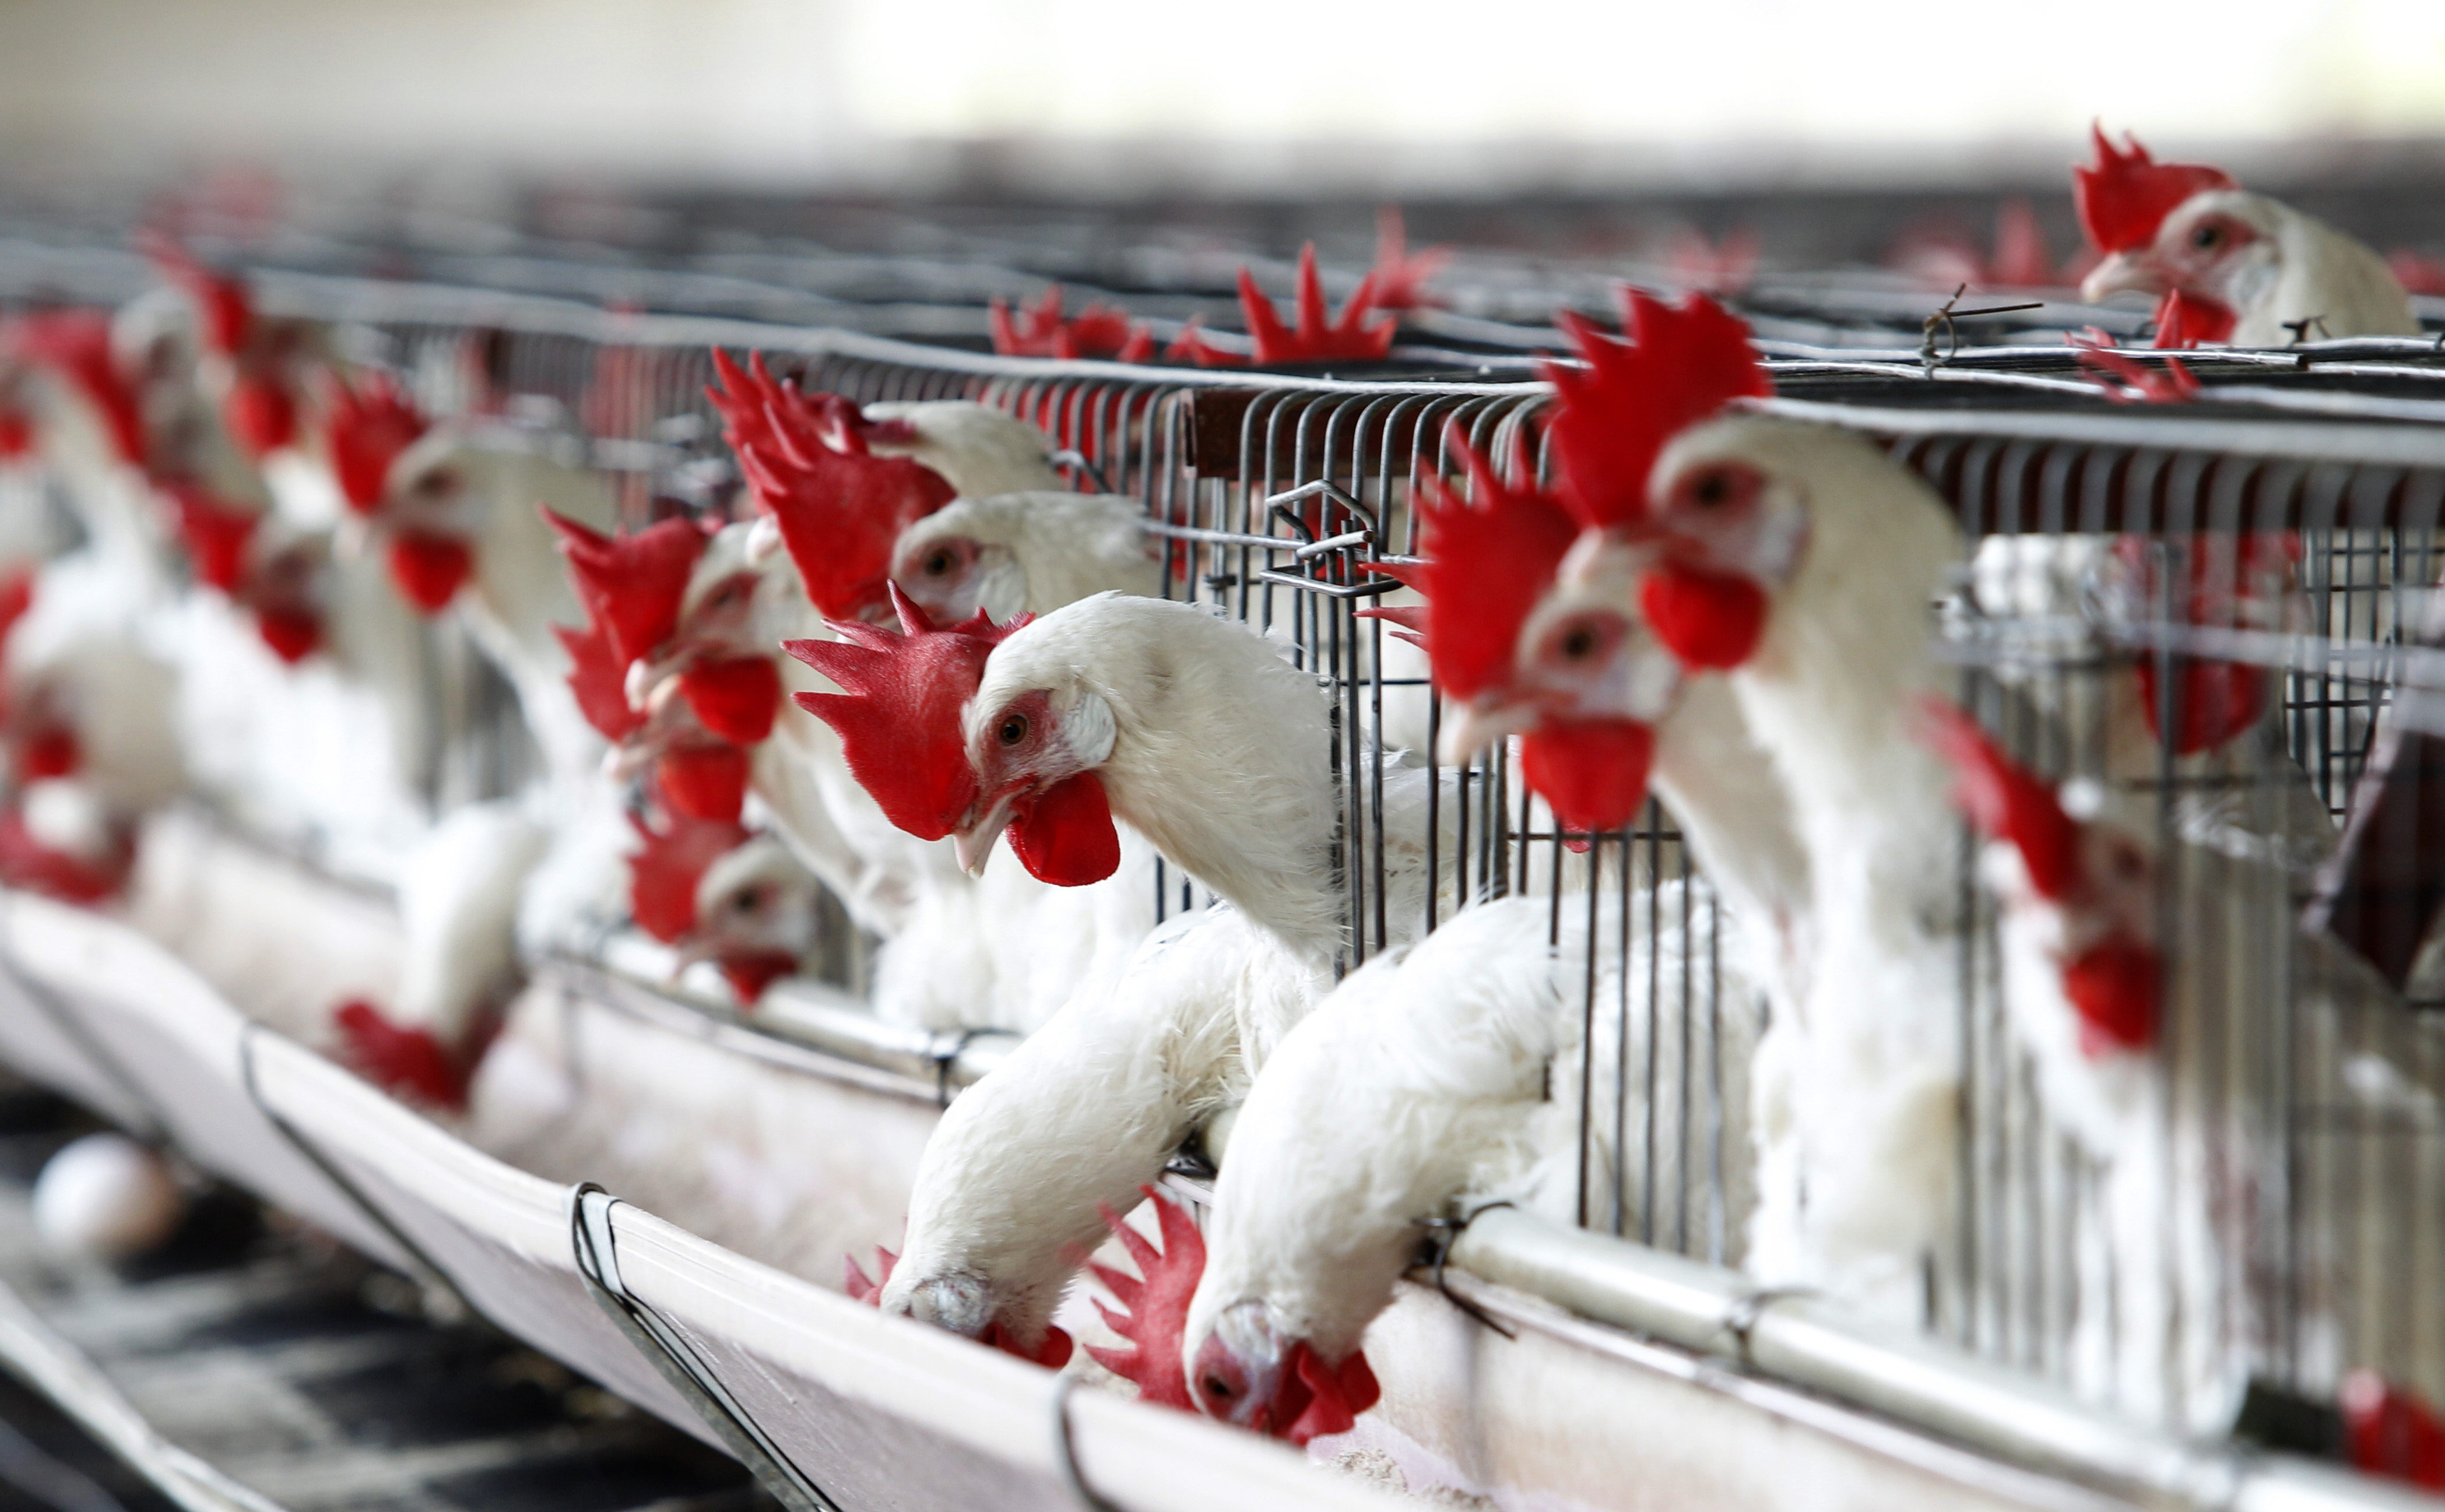 Se encienden las alarmas en Latinoamérica por avance de la gripe aviar